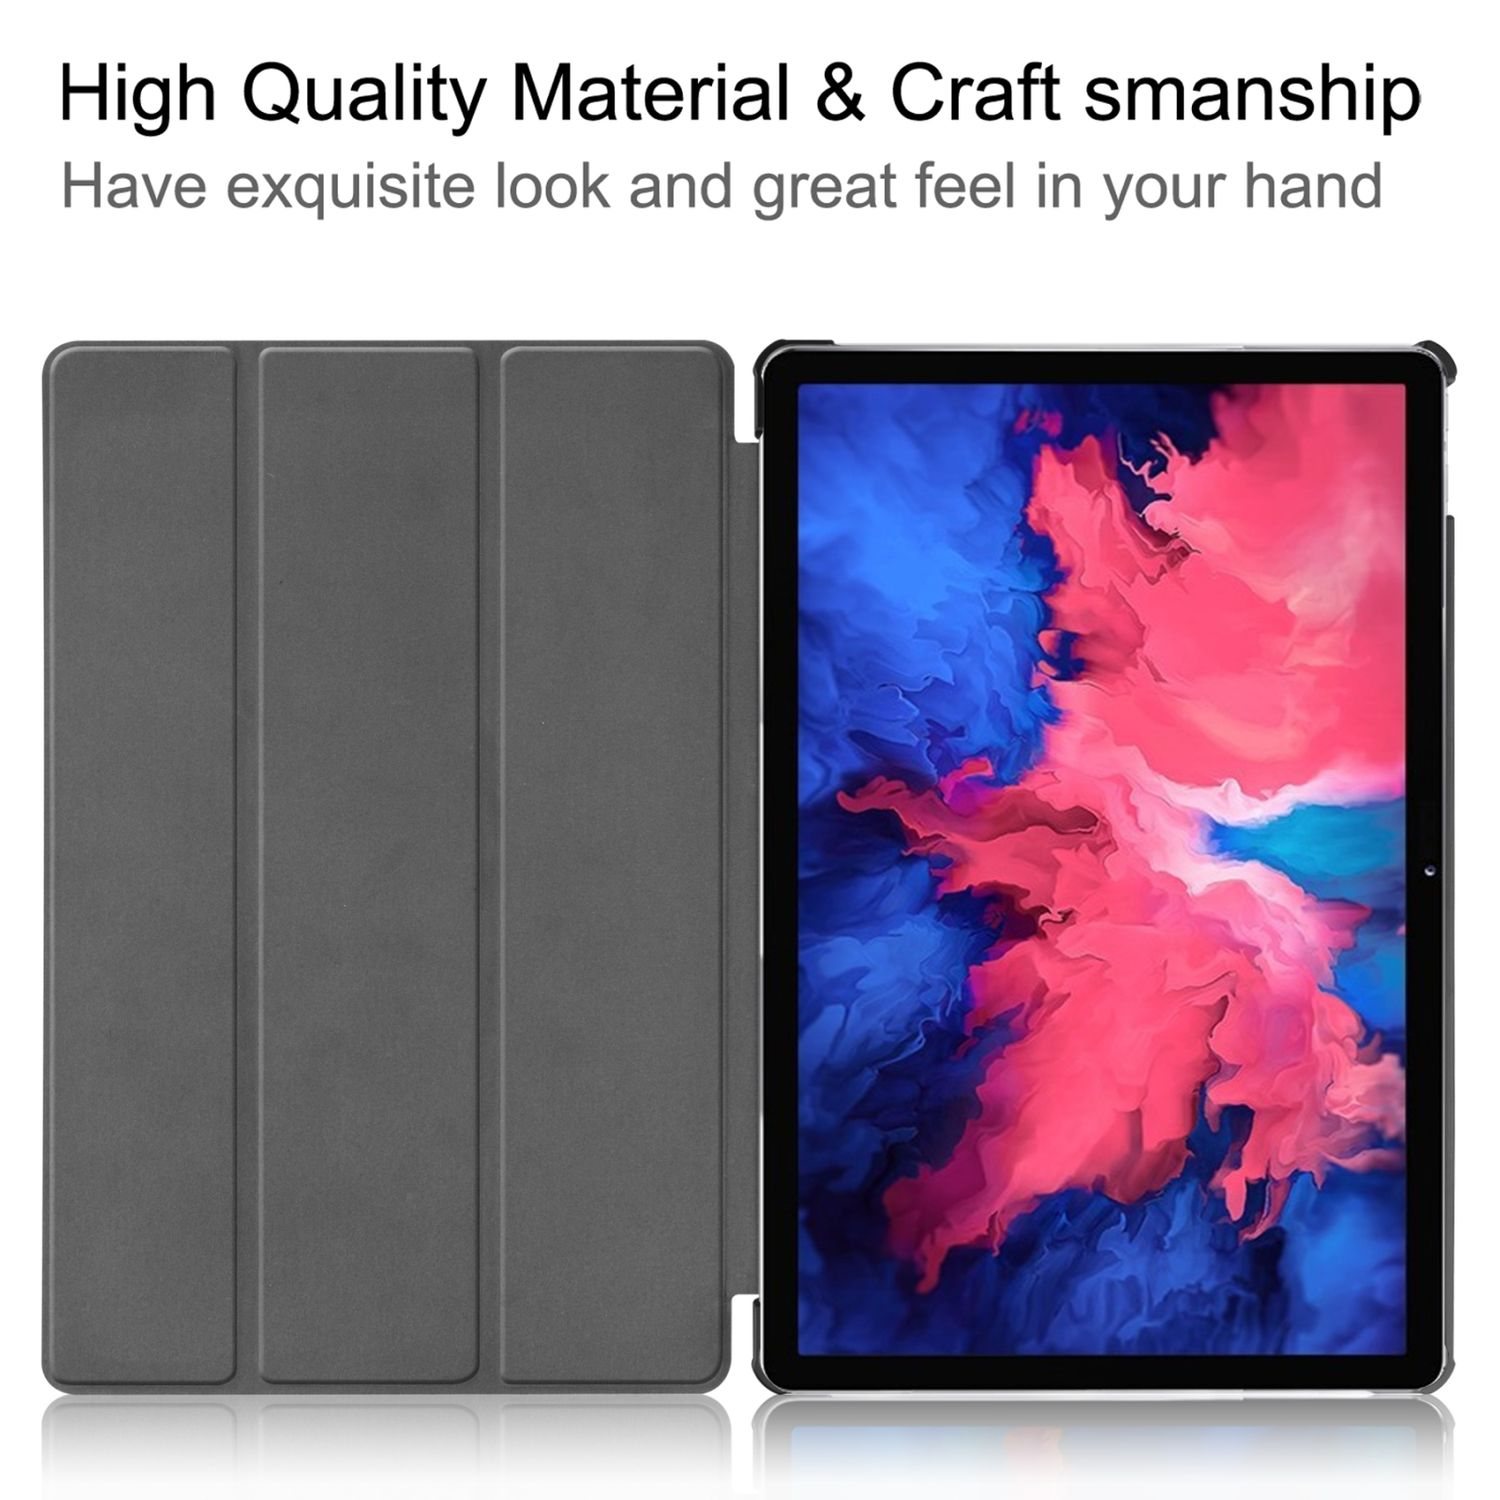 Tablet-Hülle Violett Tablet-Hülle für Lenovo Bookcover KÖNIG DESIGN Kunstleder,